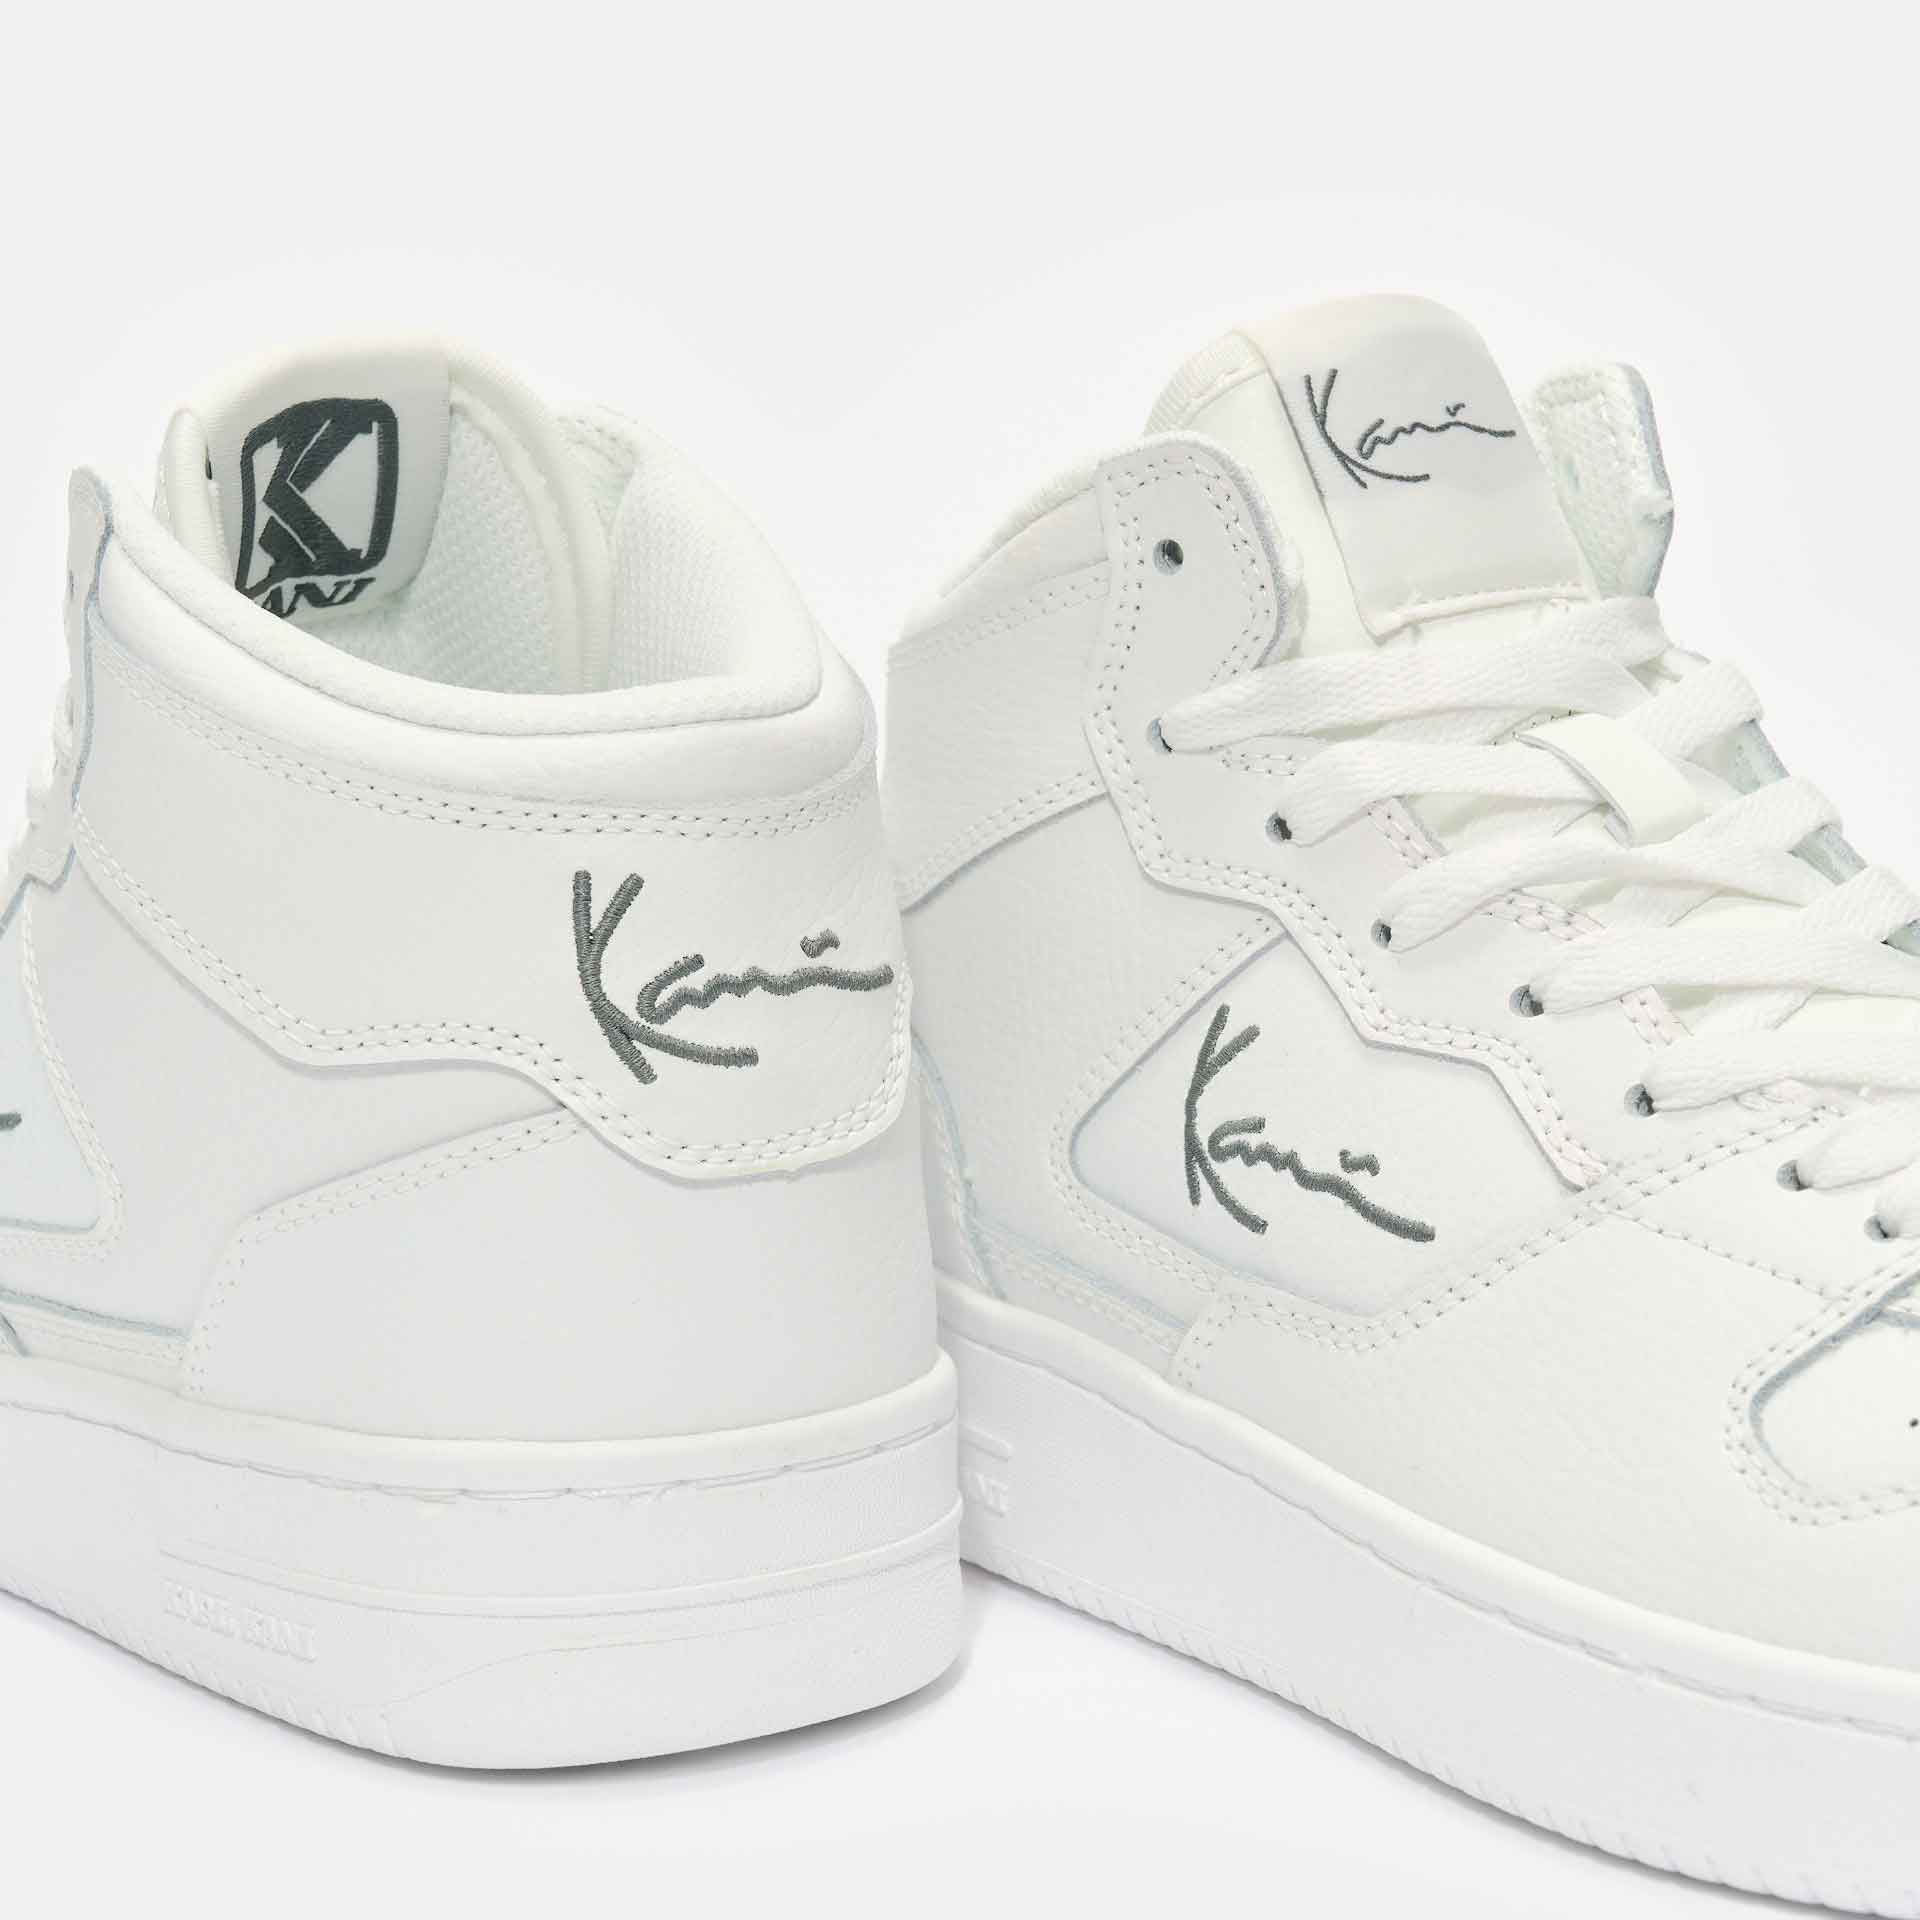 Karl Kani High PRM Sneaker White/Grey